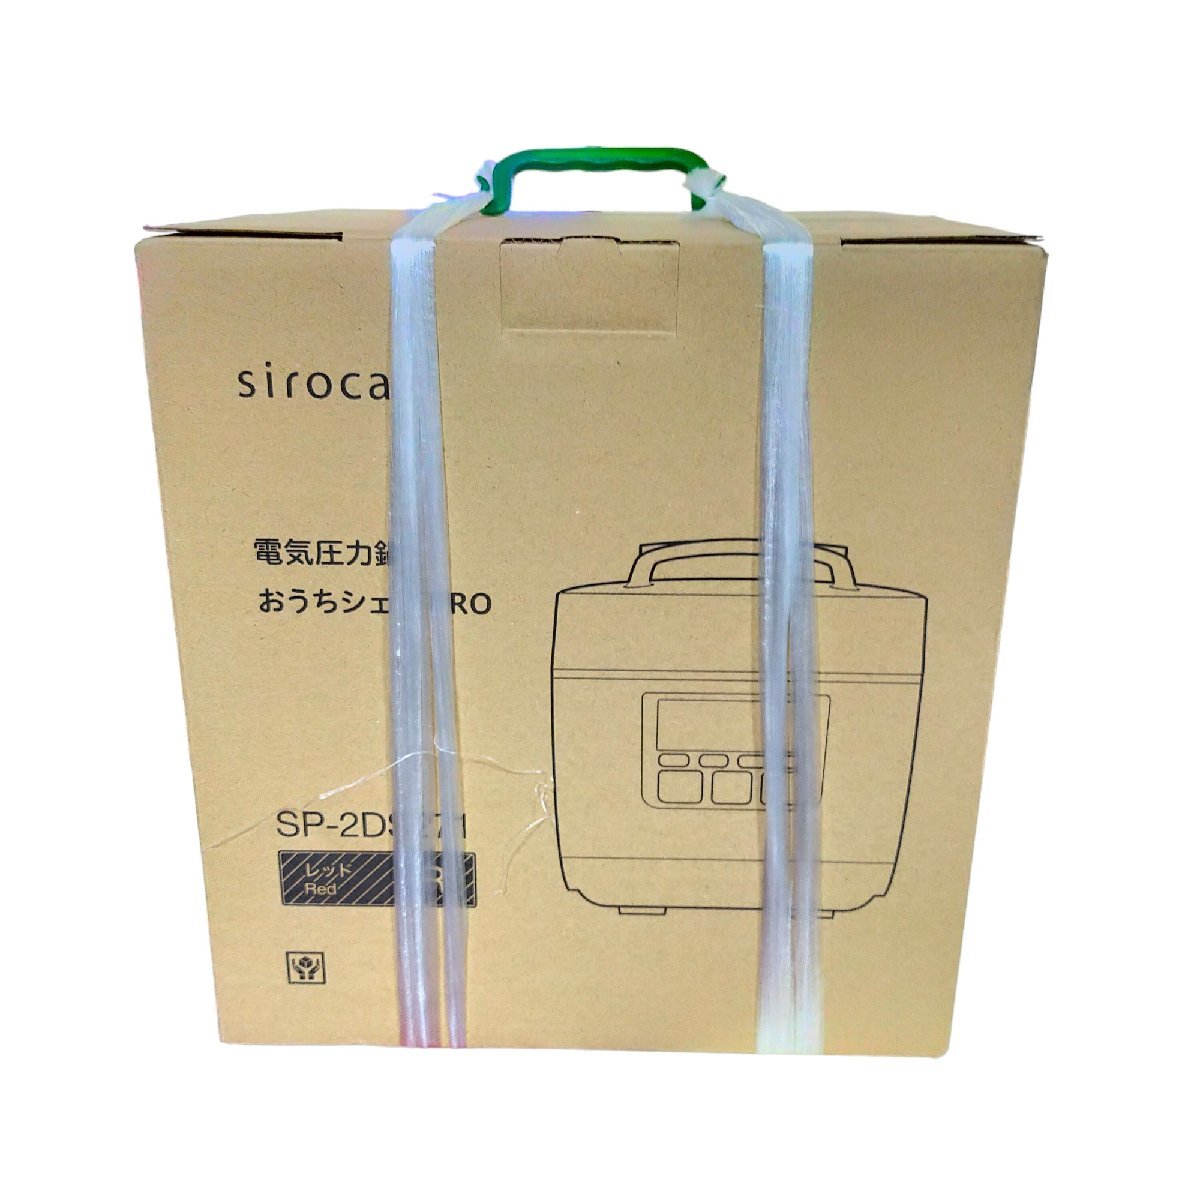 ◇未開封品◇ siroca/シロカ おうちシェフPRO 電気圧力鍋 SP-2DS271